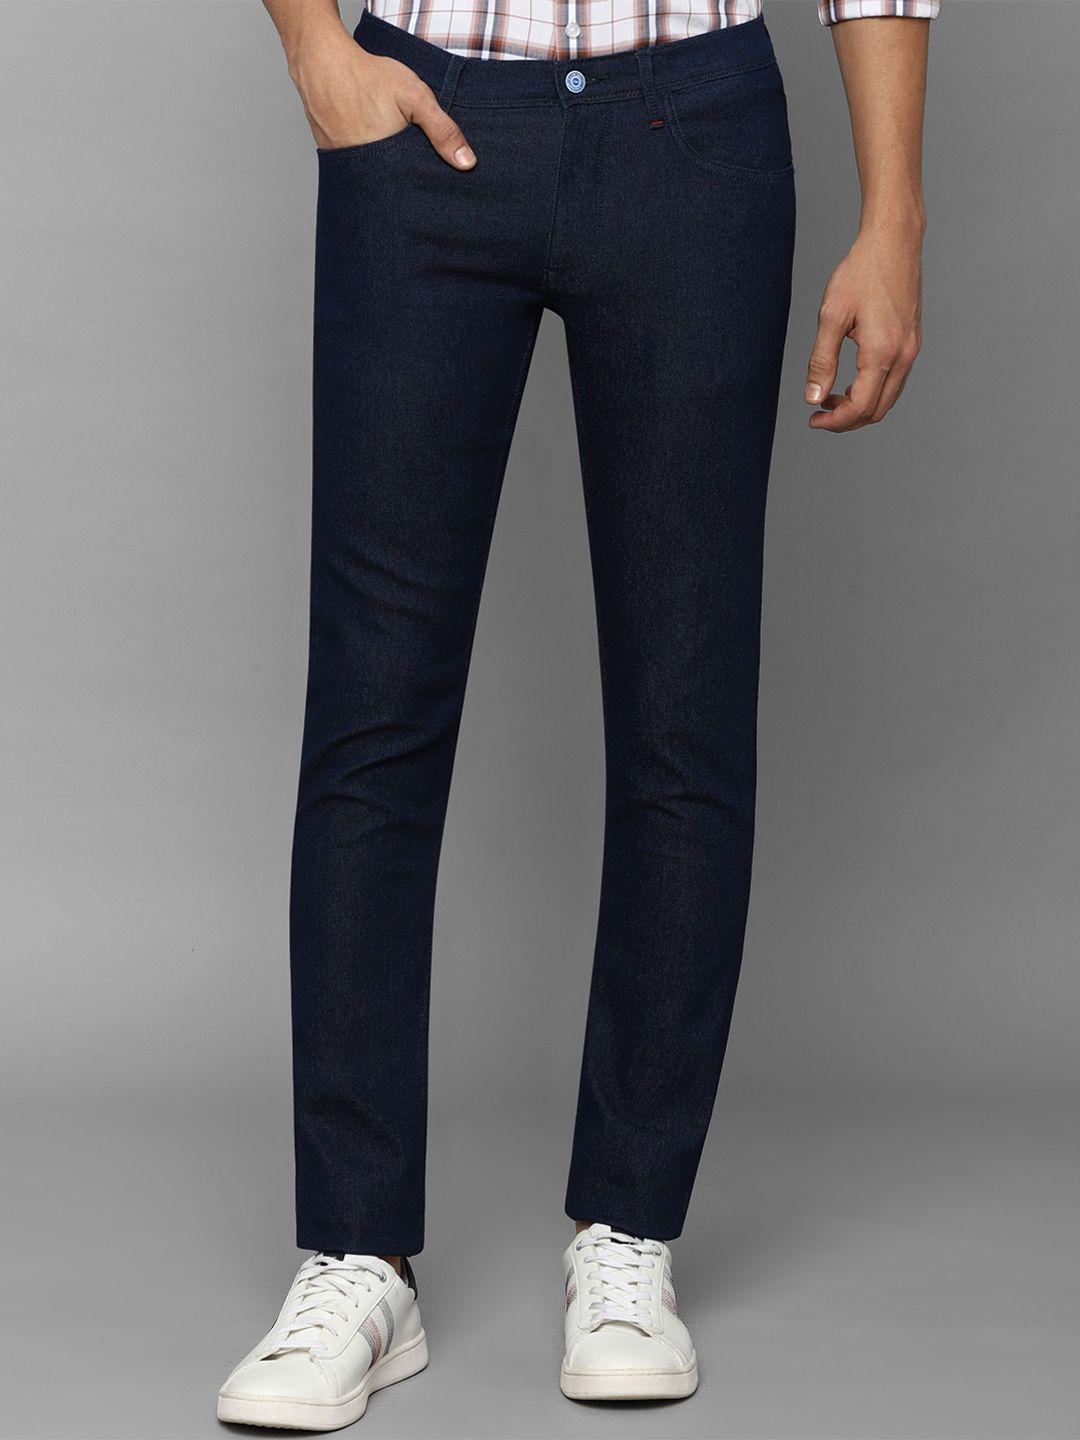 allen-solly-men-navy-blue-skinny-fit-jeans